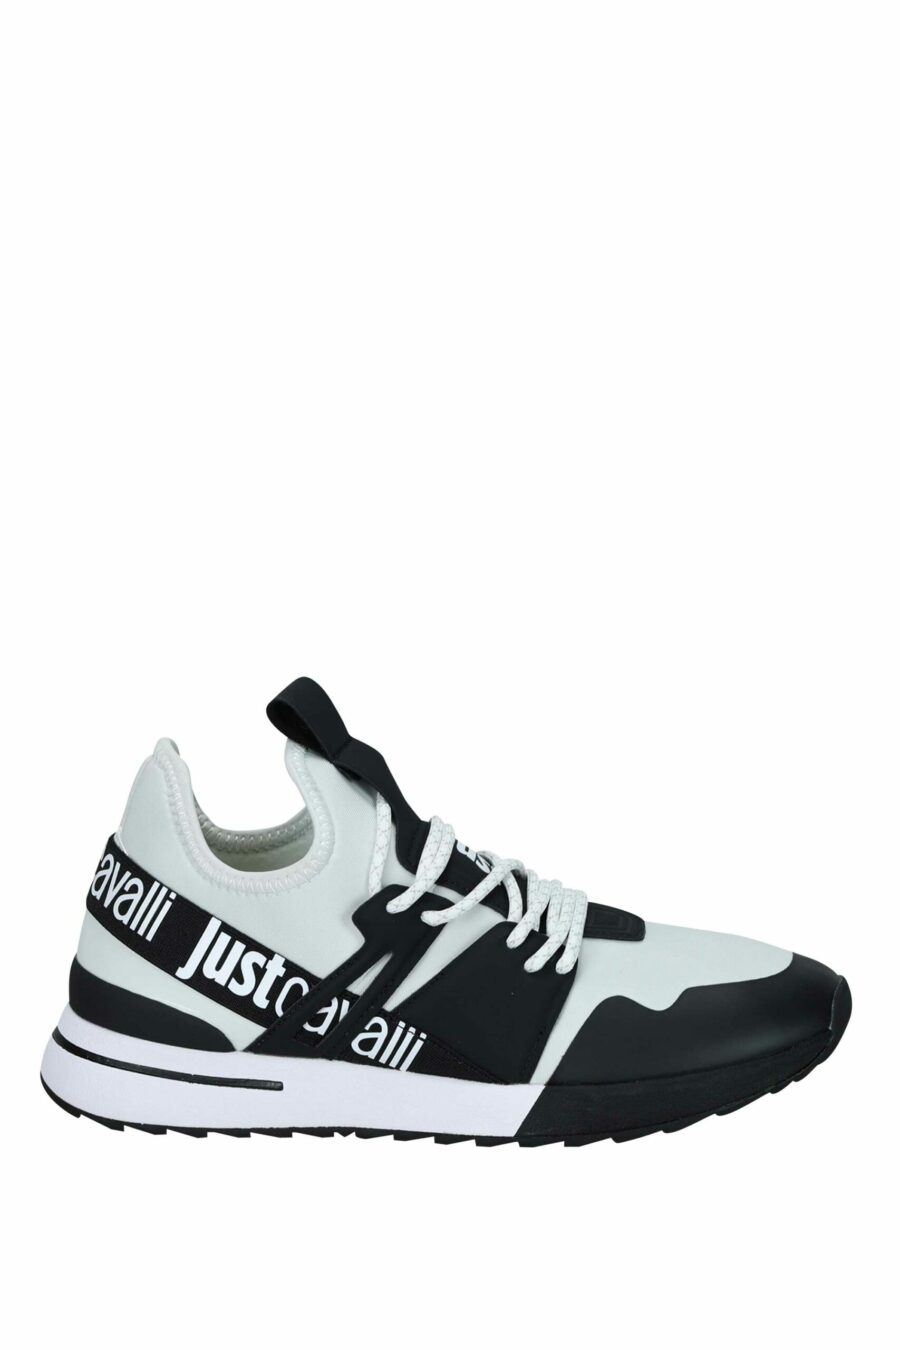 Zapatillas bicolor blancas y negras con logo en cinta - 8052672738127 scaled